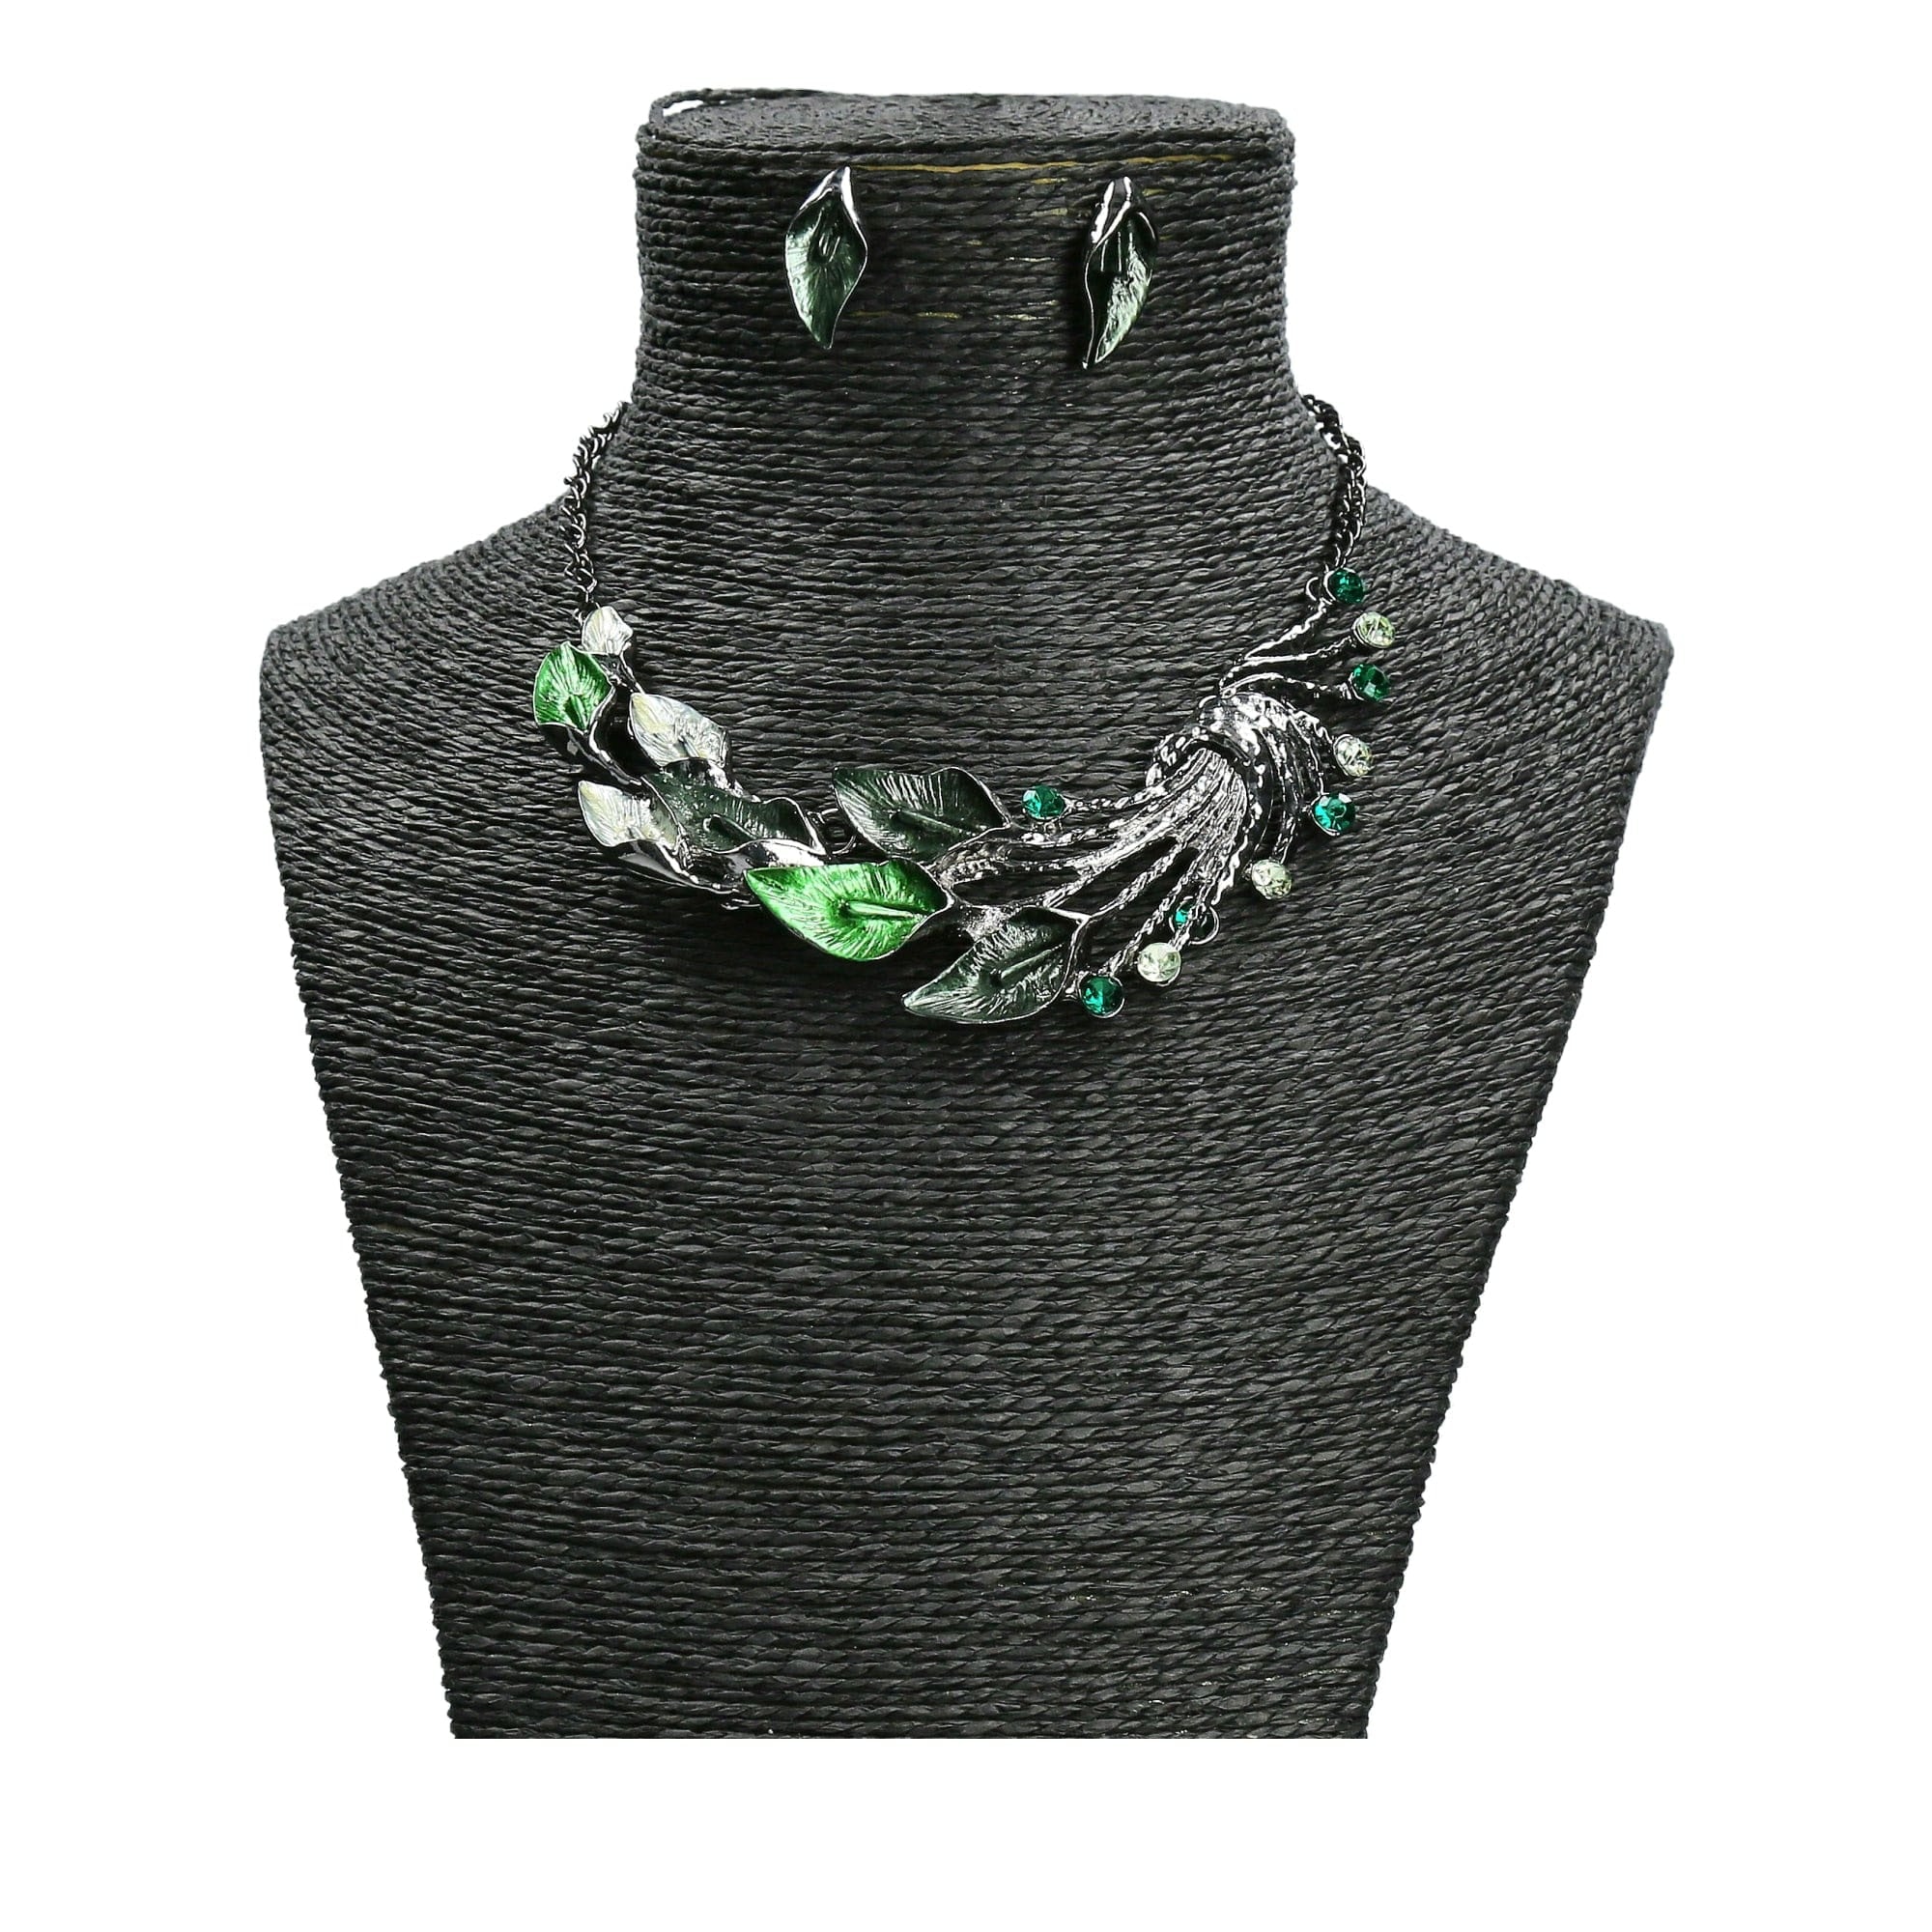 Styx jewelry set - Green - Necklace